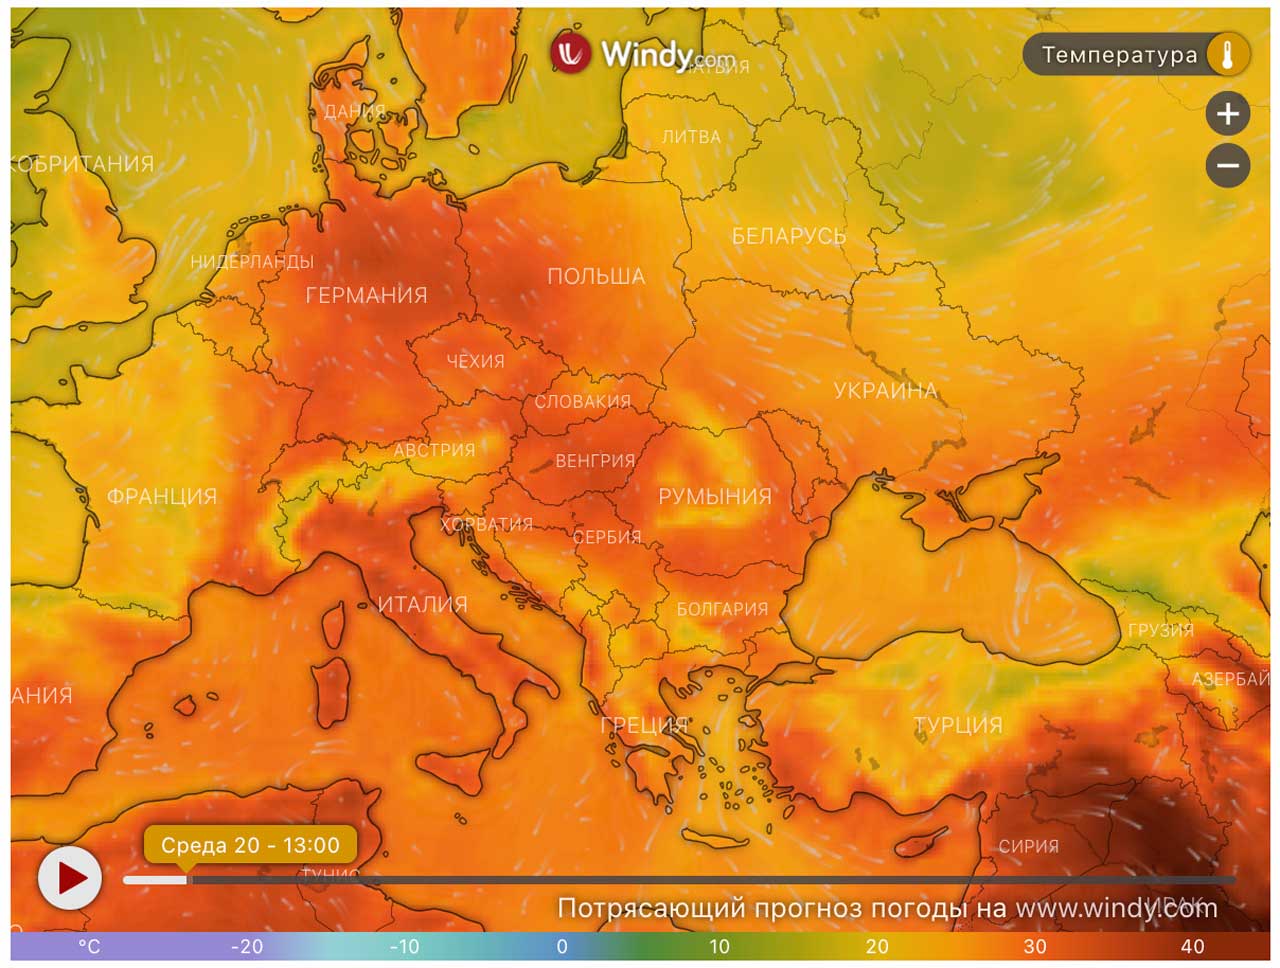 Європу захлеснула хвиля спеки: В Іспанії, Італії, Греції та Франції горять ліси, а в Португалії вже зареєстровано понад 1000 смертей